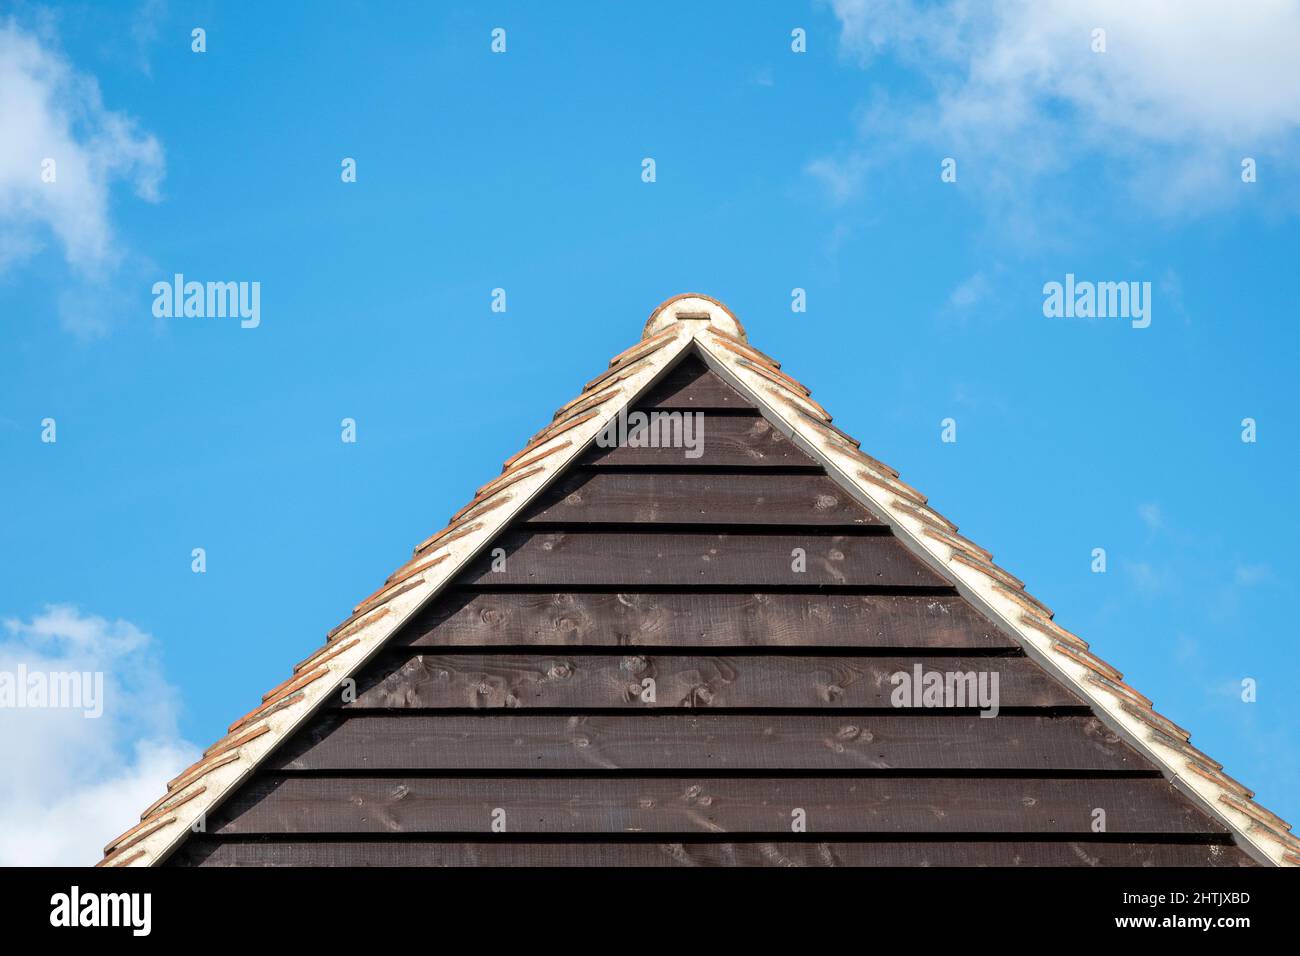 Horizontale Holzverkleidung am Giebel-Ende des Gebäudes mit Ziegeldach, das eine Pyramide gegen einen blauen Himmel bildet Stockfoto